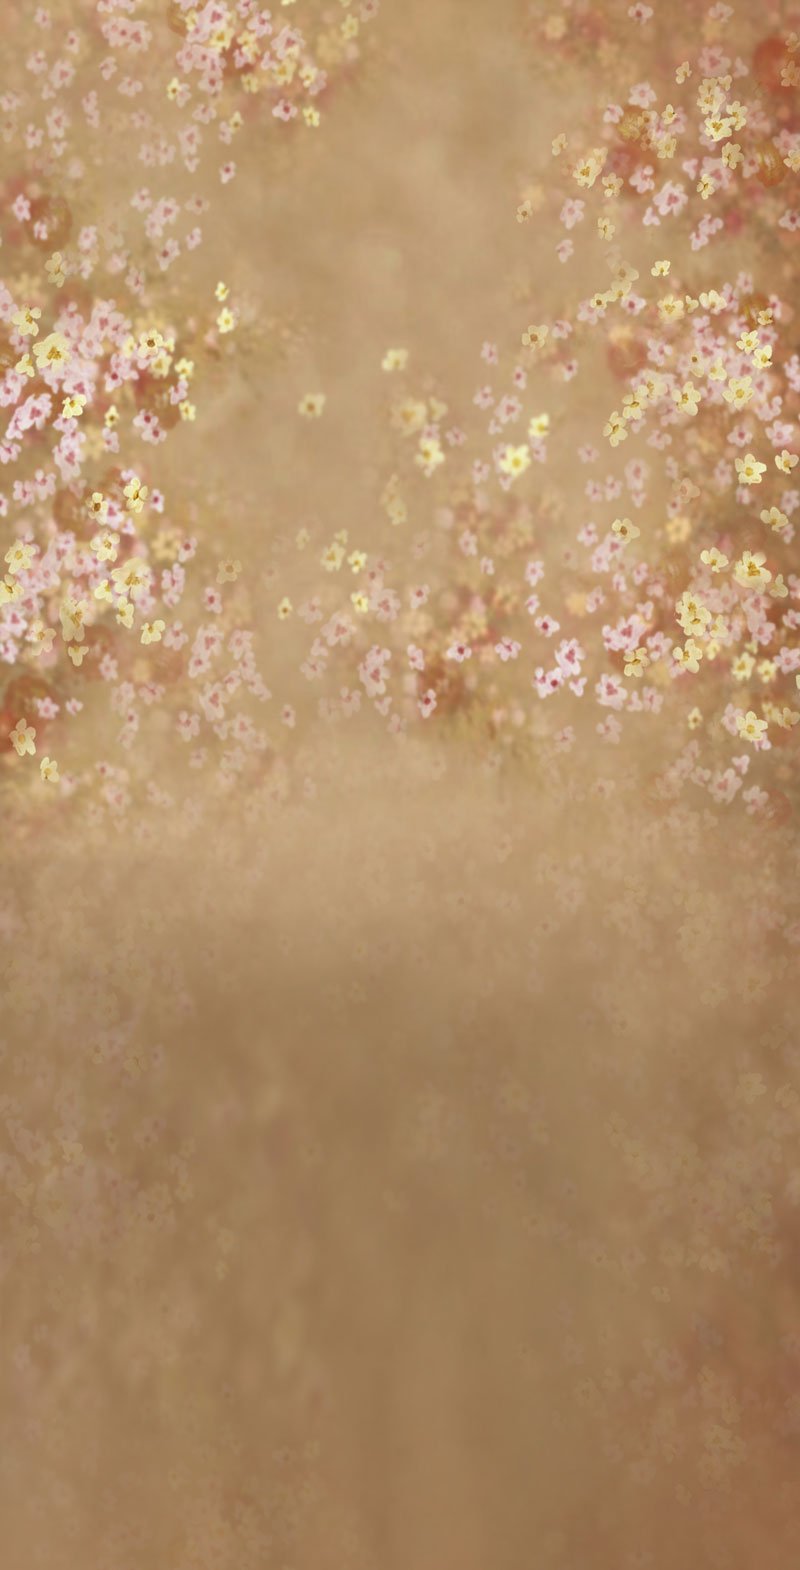 Kate Barrido de telón de fondo de flores de color marrón tembloroso para fotografía